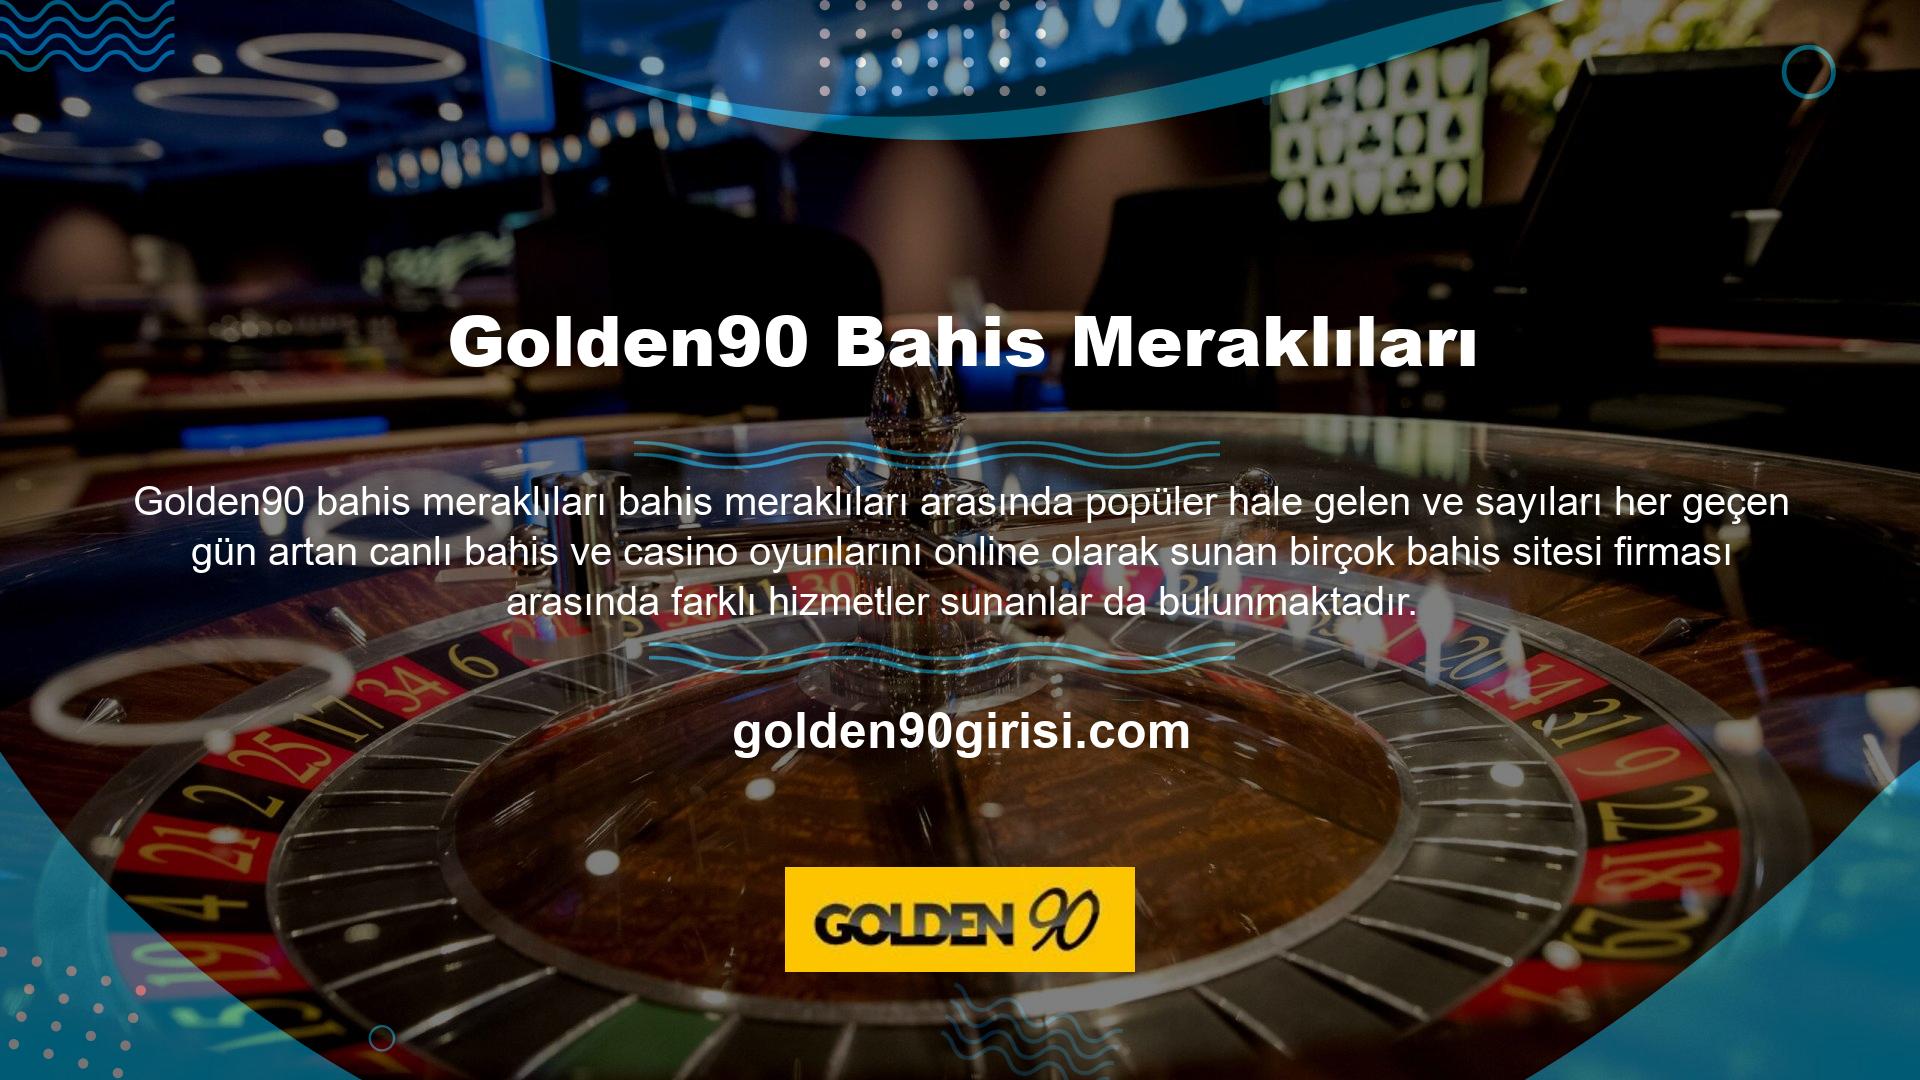 Üyelik kayıt aşamasında istenen bilgiler, Golden90 Web Bahis Platformunda para çekme sırasında verilen bilgilerle eşleşiyorsa, herhangi bir ek belgeye gerek kalmadan hemen para çekebilirsiniz